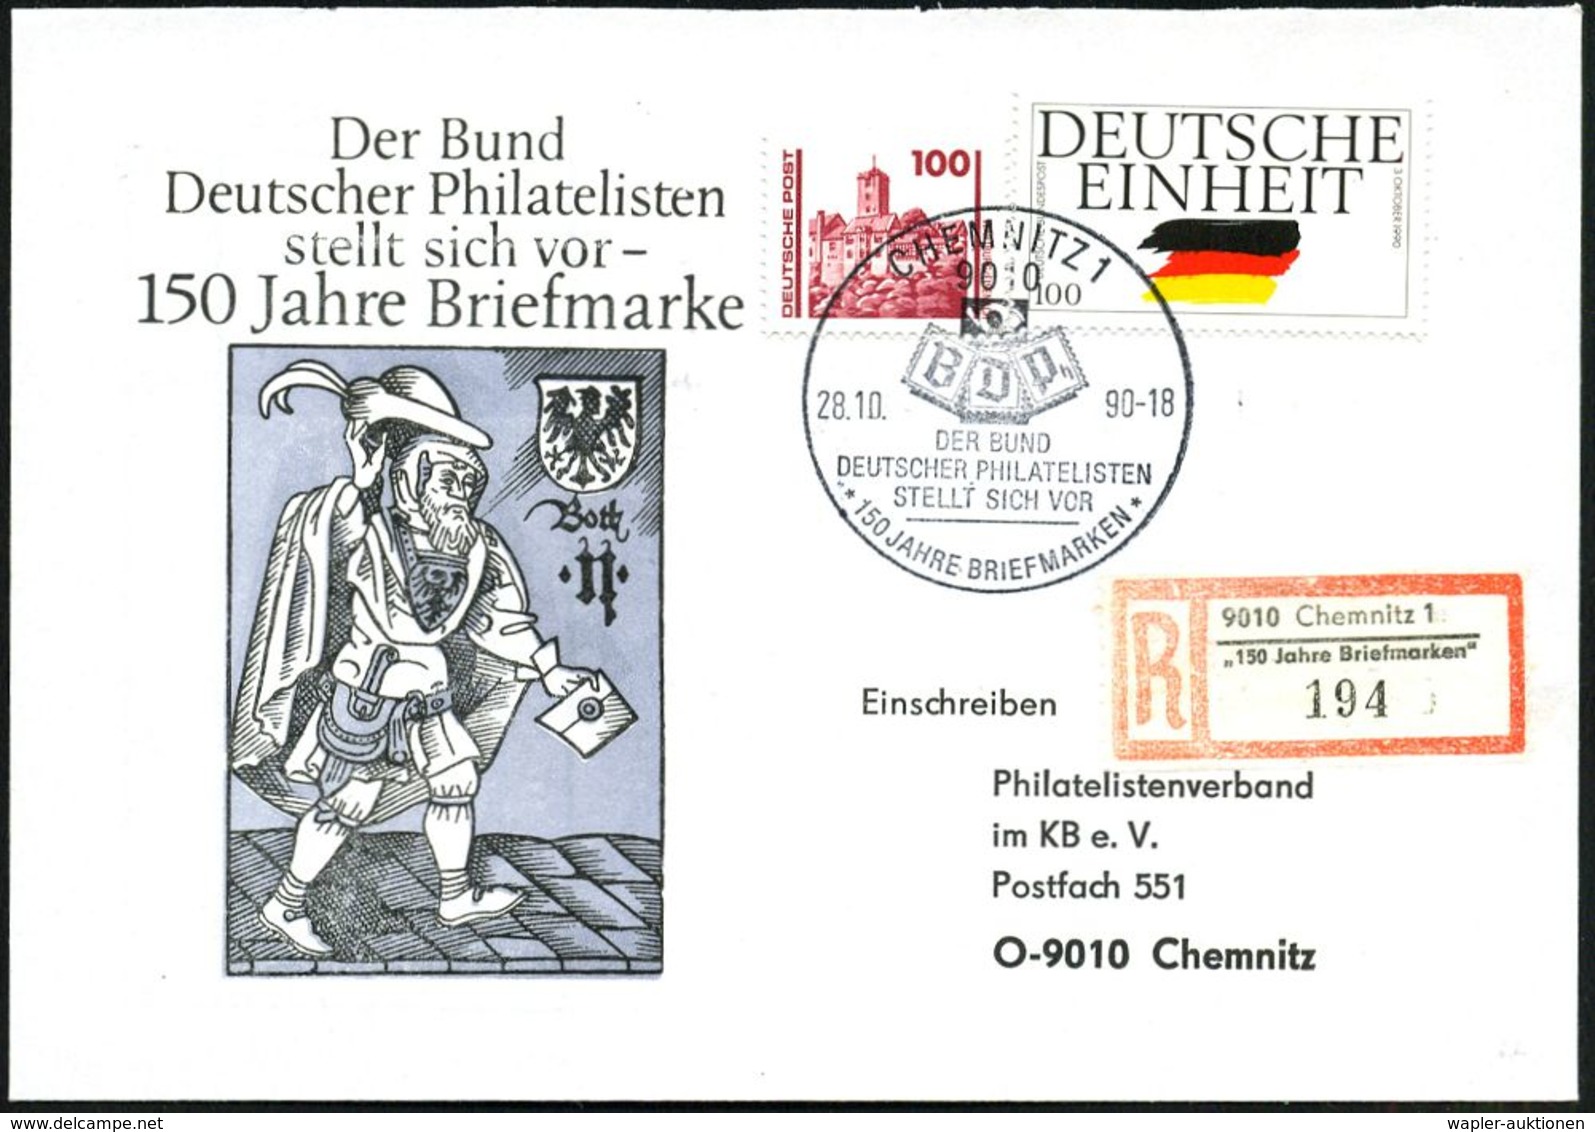 9010 CHEMNITZ 1/ BdPh../ 150 JAHRE BRIEFMARKEN 1990 (22.10.) SSt (BDPh-Logo) Auf 100 Pf. "Deutsche Einheit" U.a. + Sonde - Briefmarkenausstellungen